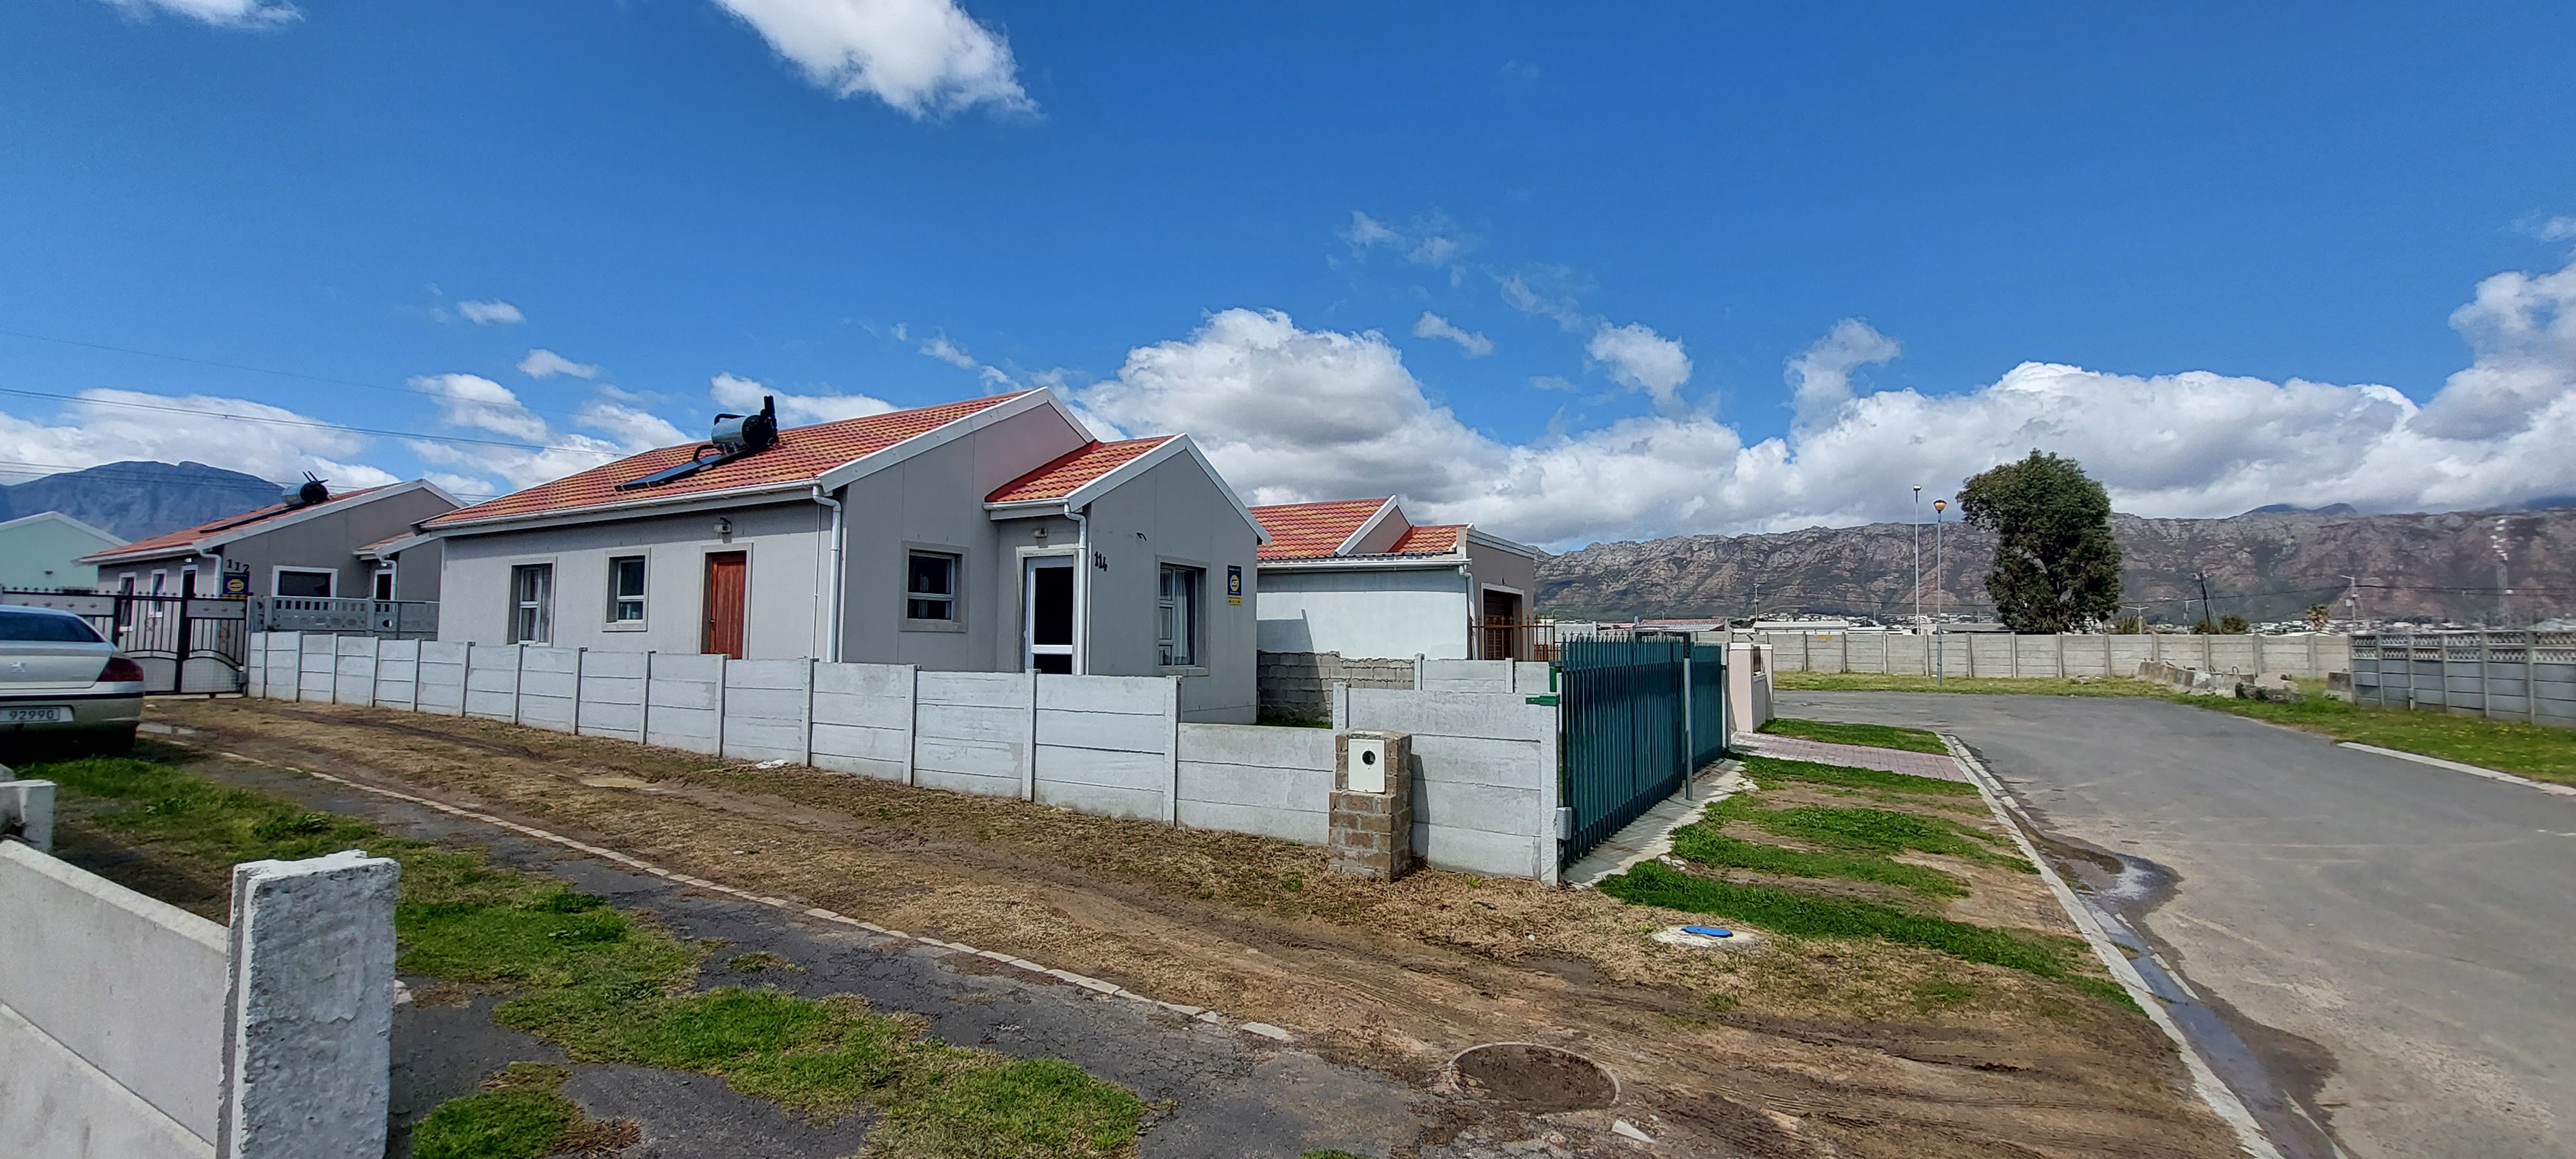 3 Bedroom Property for Sale in Broadlands Village Western Cape